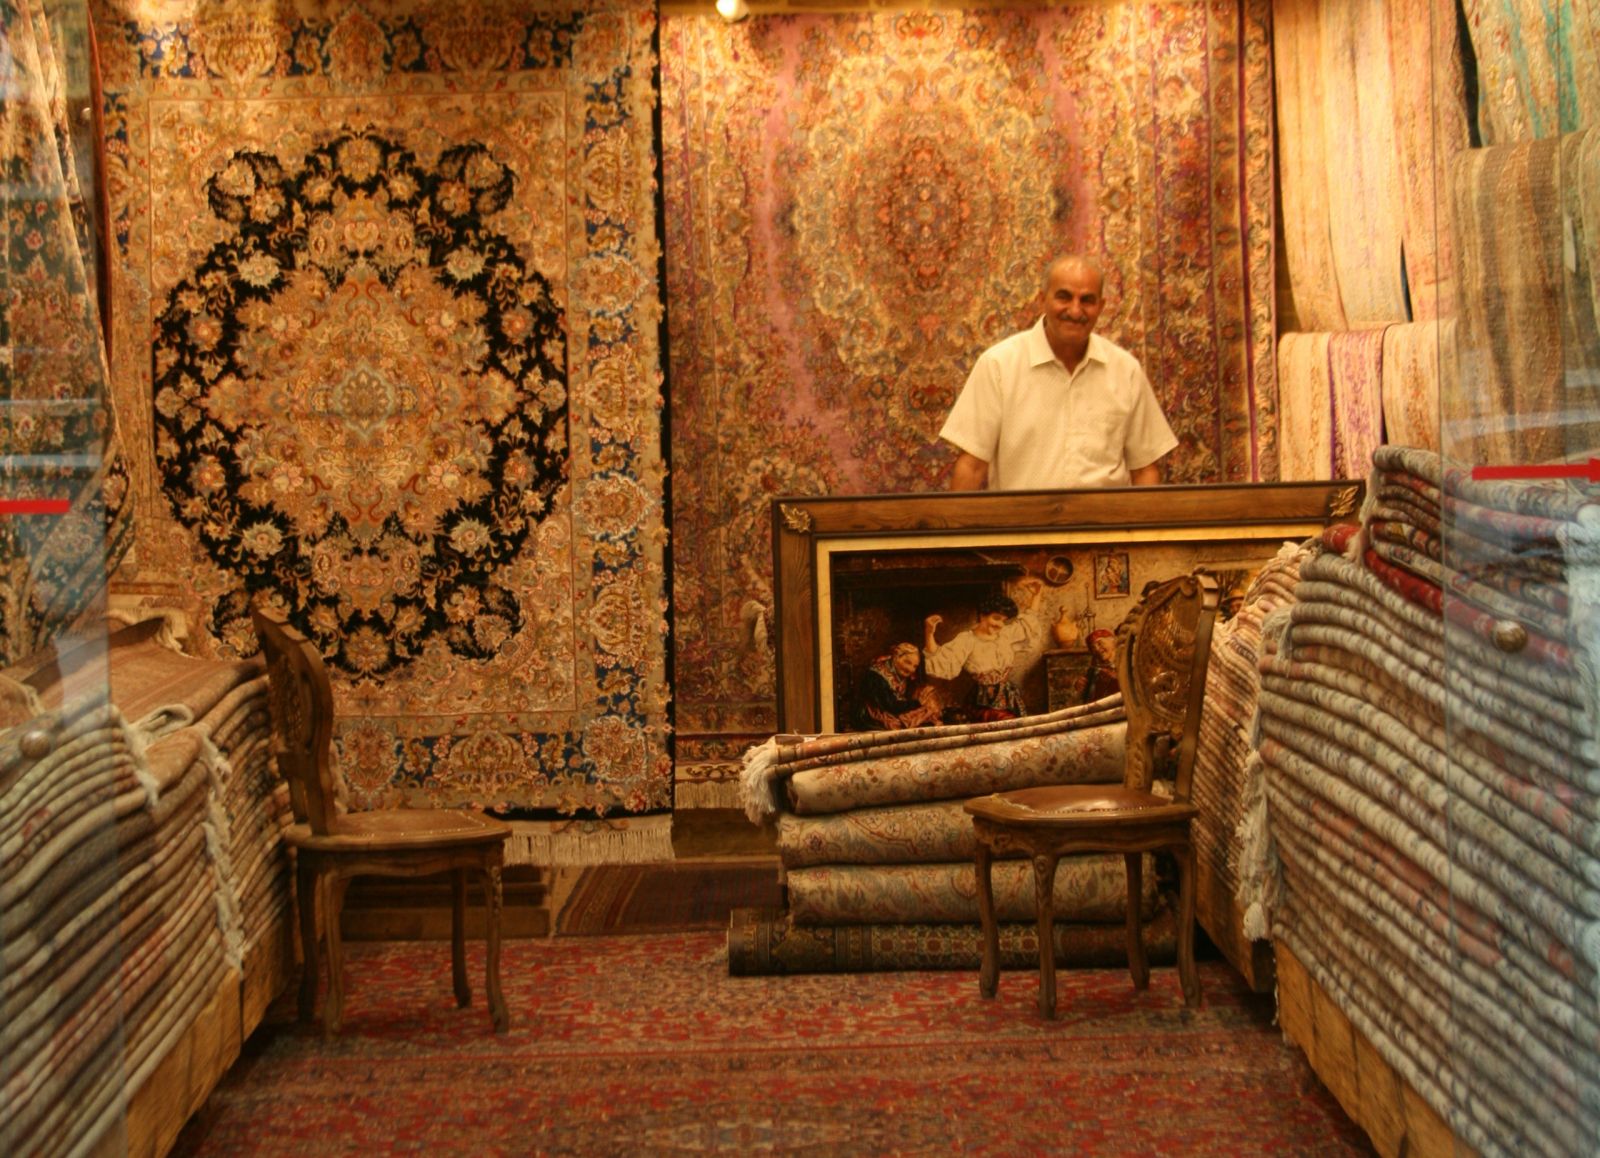 A világ legnagyobb perzsaszőnyege Iránban készült, egy arab sejk megrendelésére egy mecsetbe, 45 tonna és 2000 m2 - idén került be a Guiness Rekordok könyvébe.